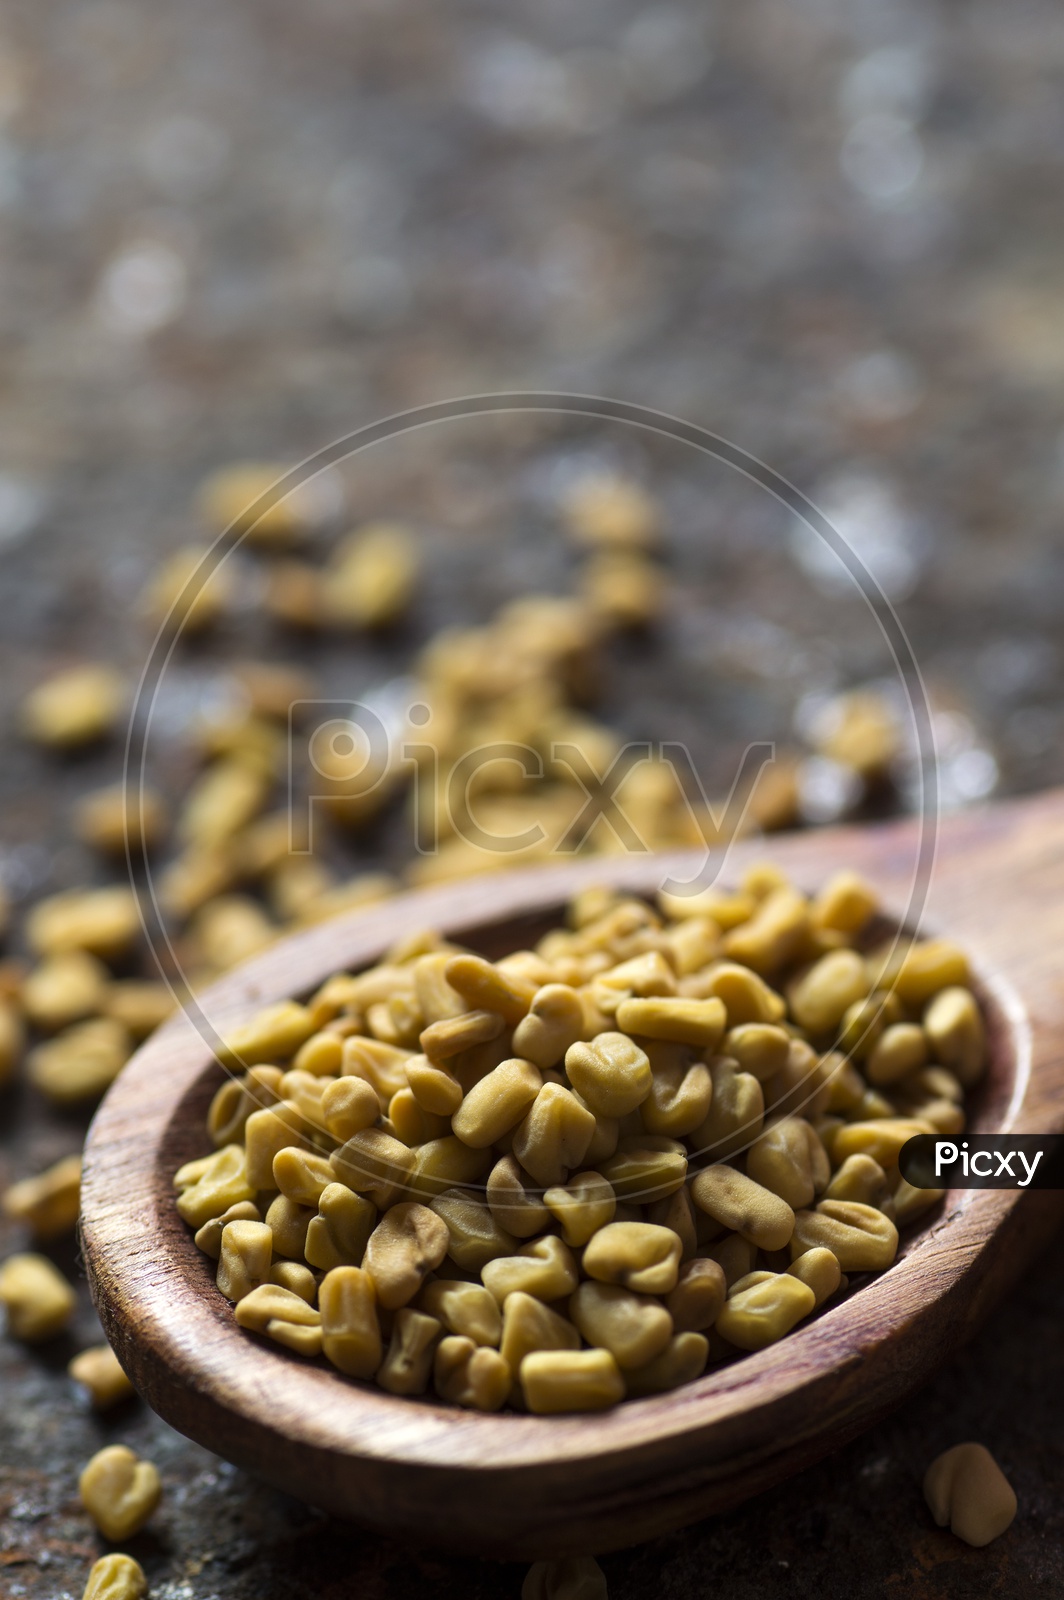 Fenugreek Seeds in a wooden spoon